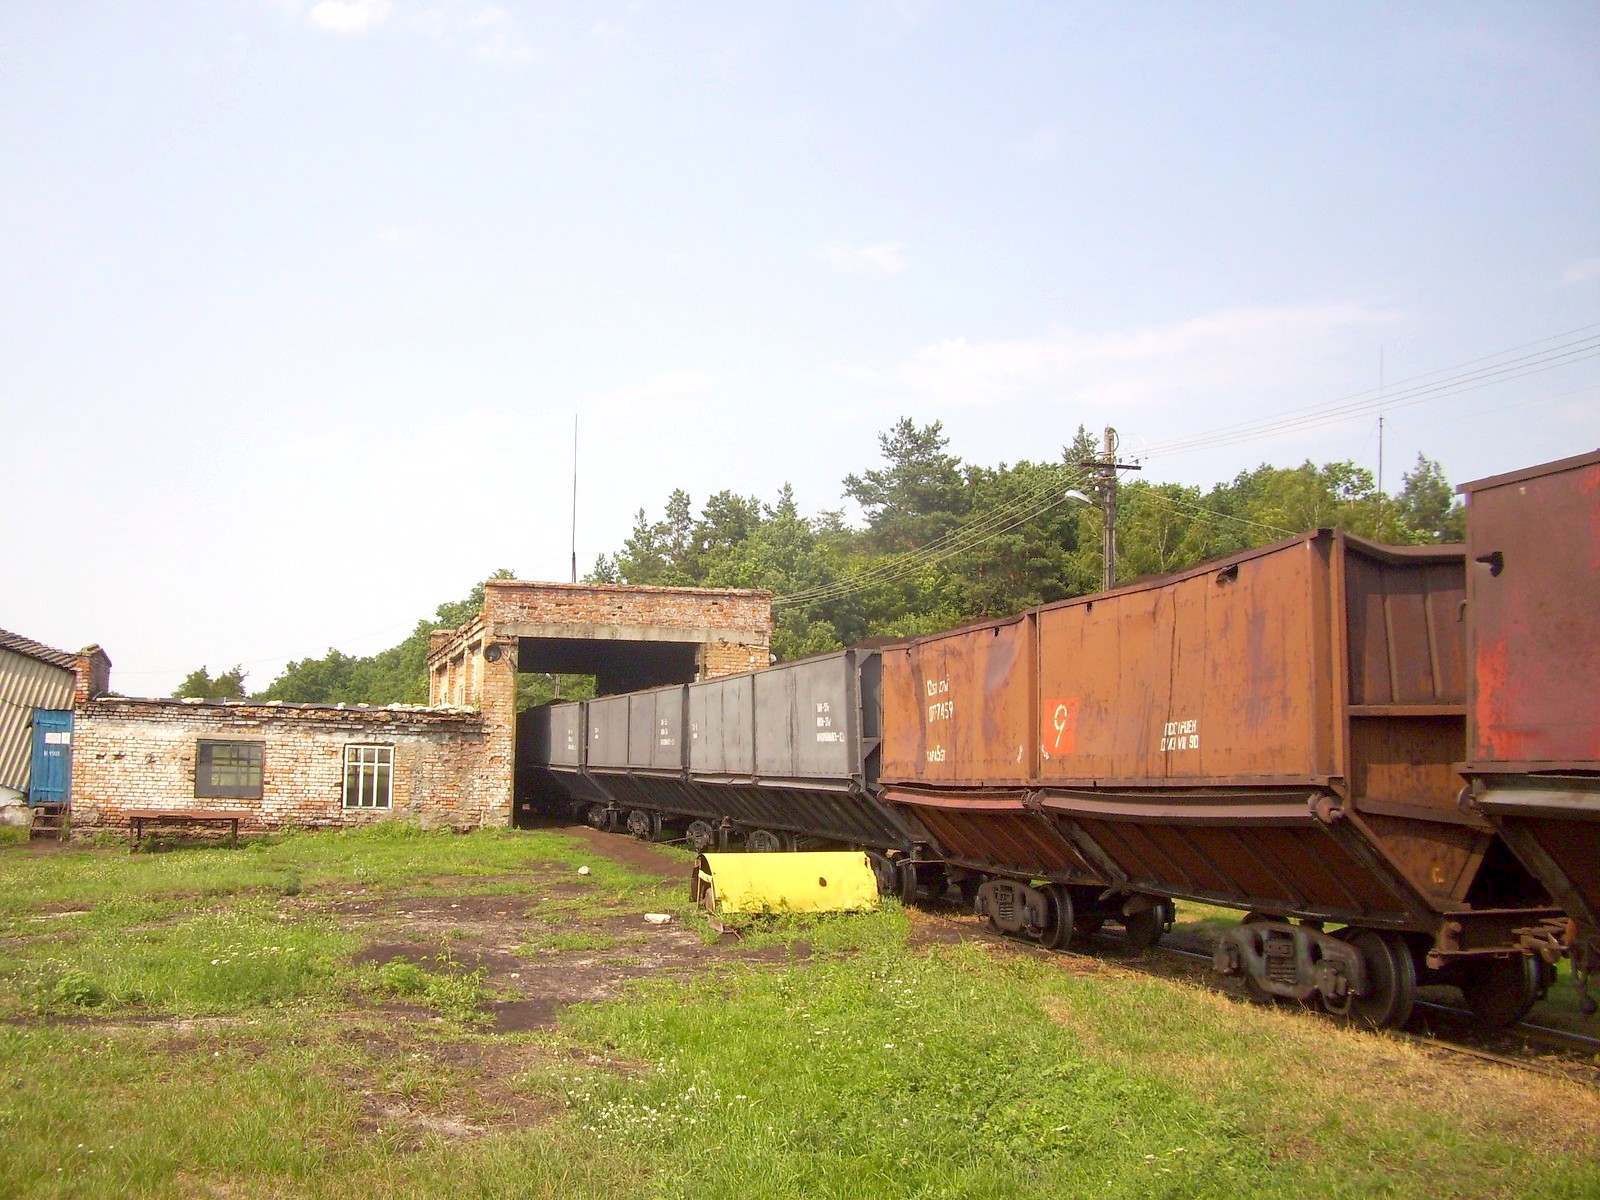 Узкоколейная железная дорога Смыжского торфобрикетного завода — фотографии, сделанные в 2011 году (часть 2)